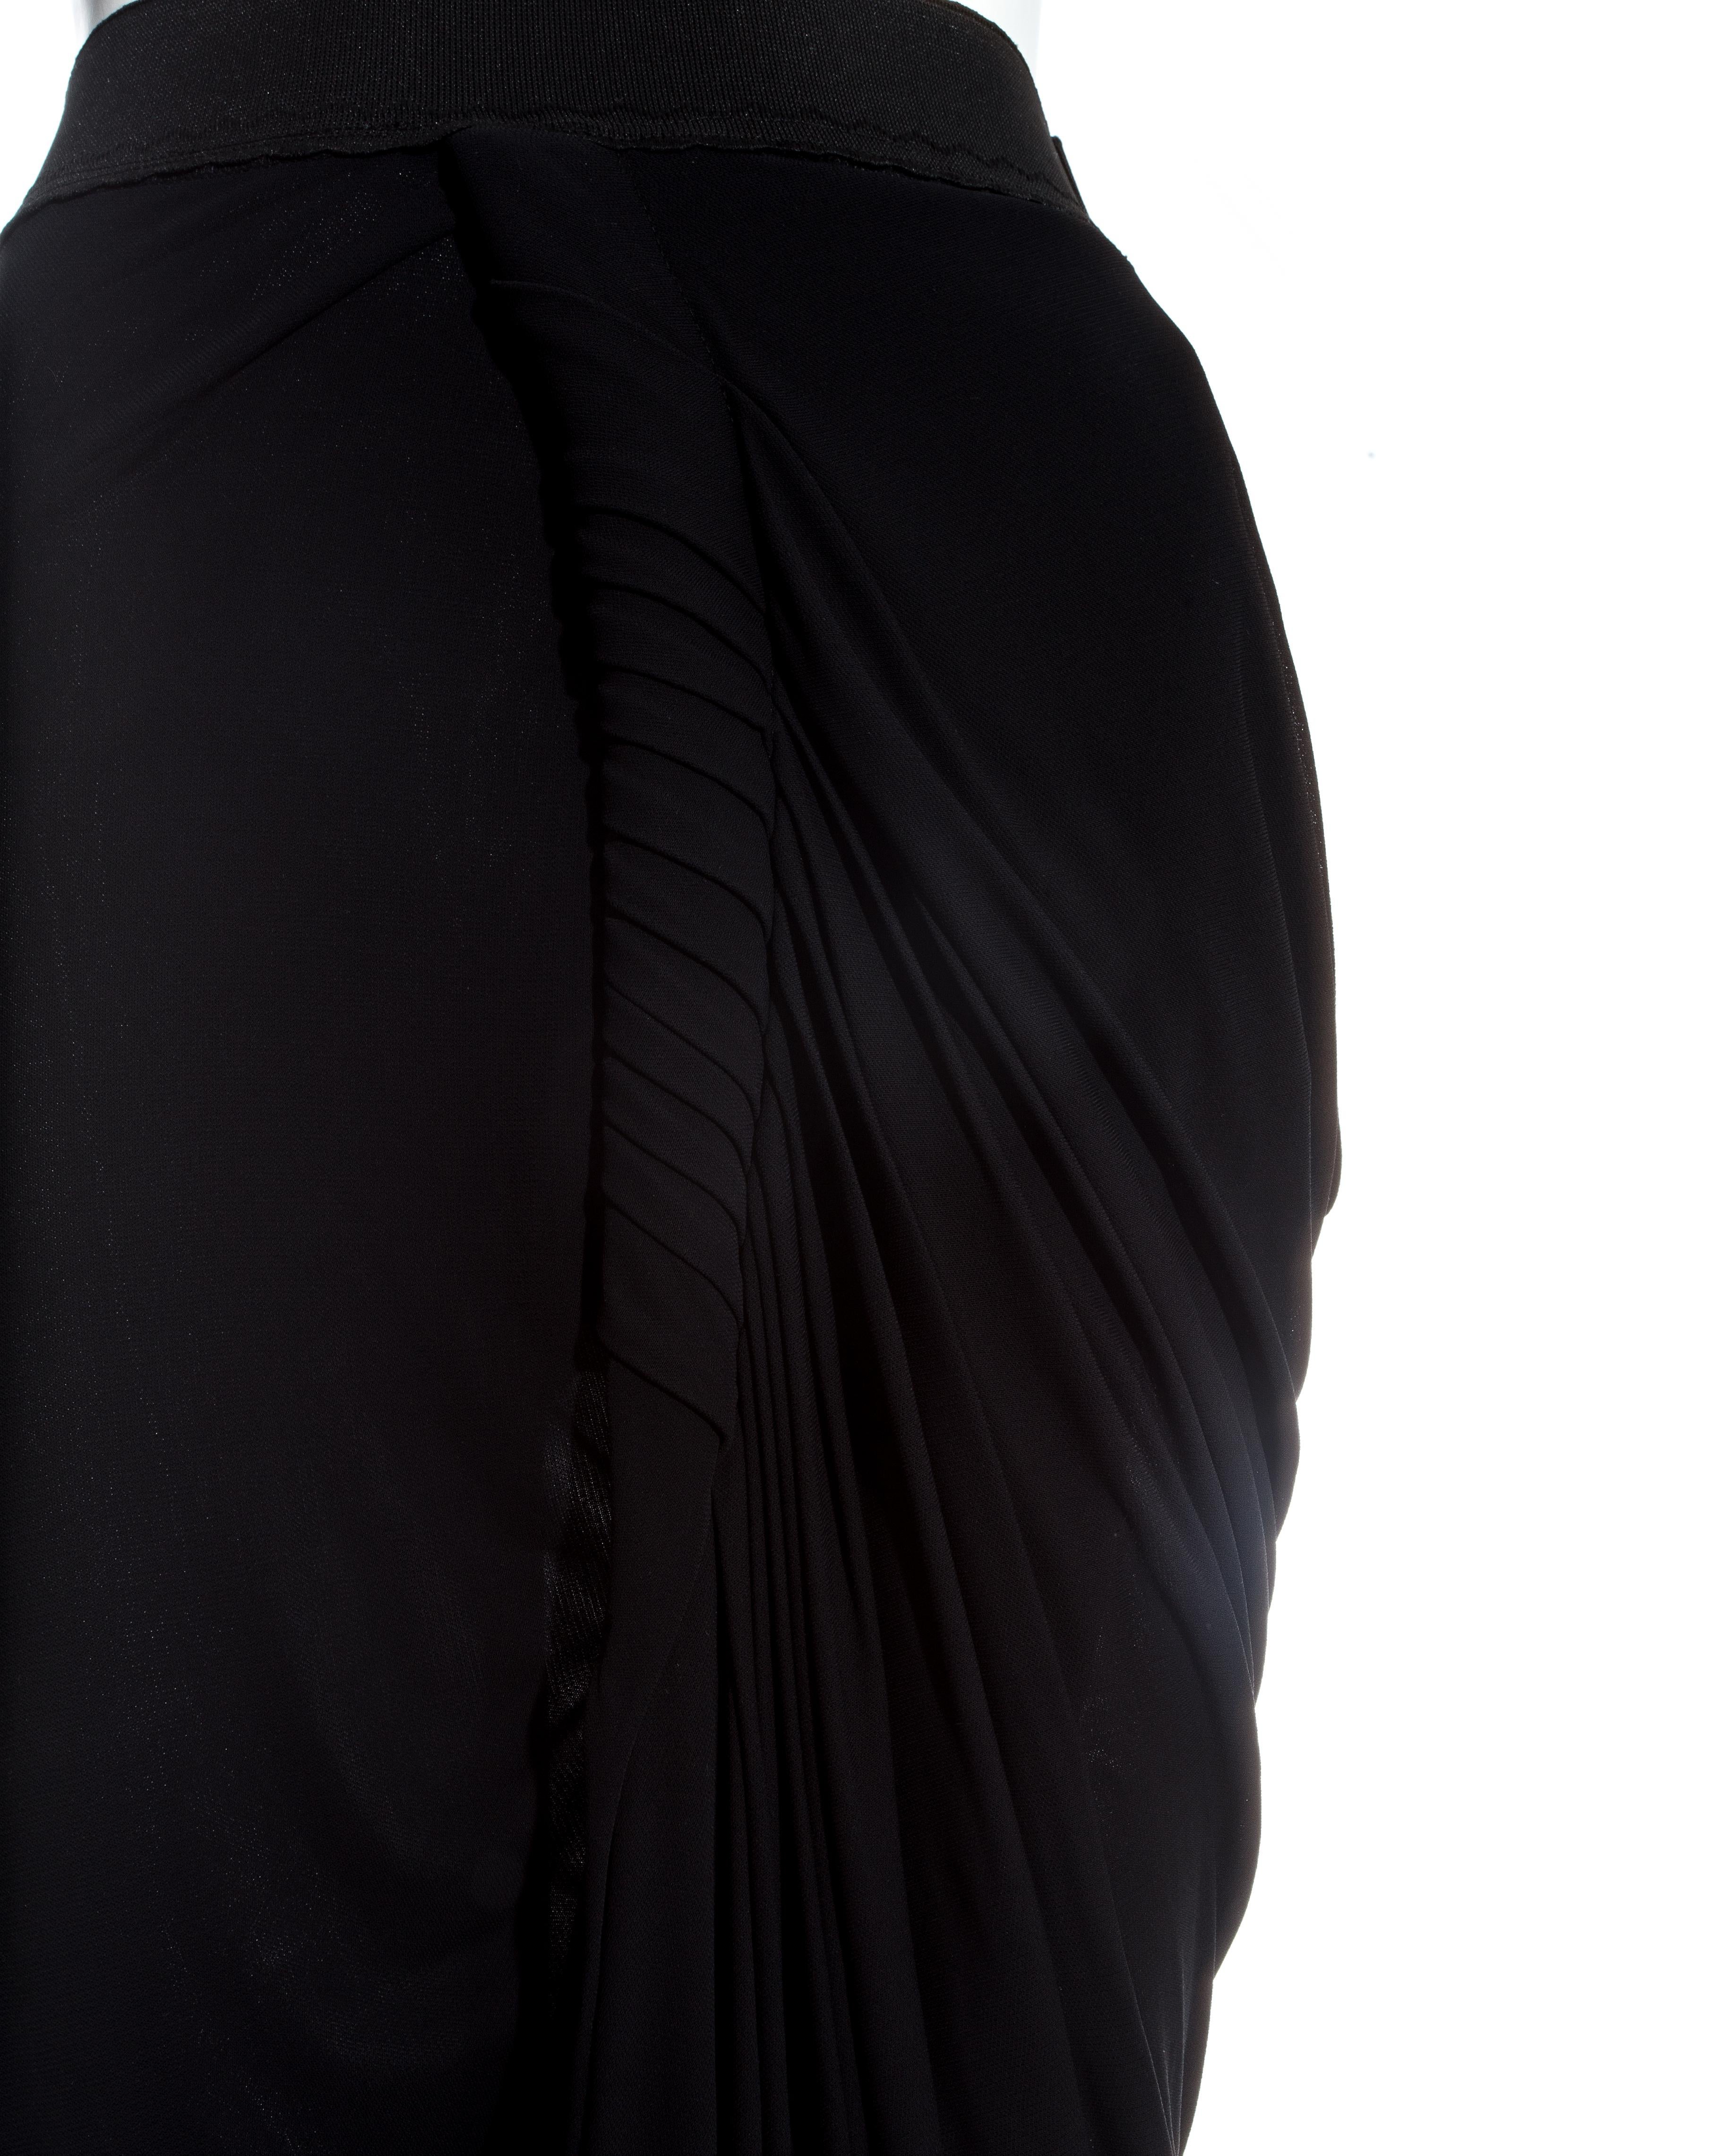 Men's Jean Paul Gaultier black jersey draped evening skirt, ss 2009